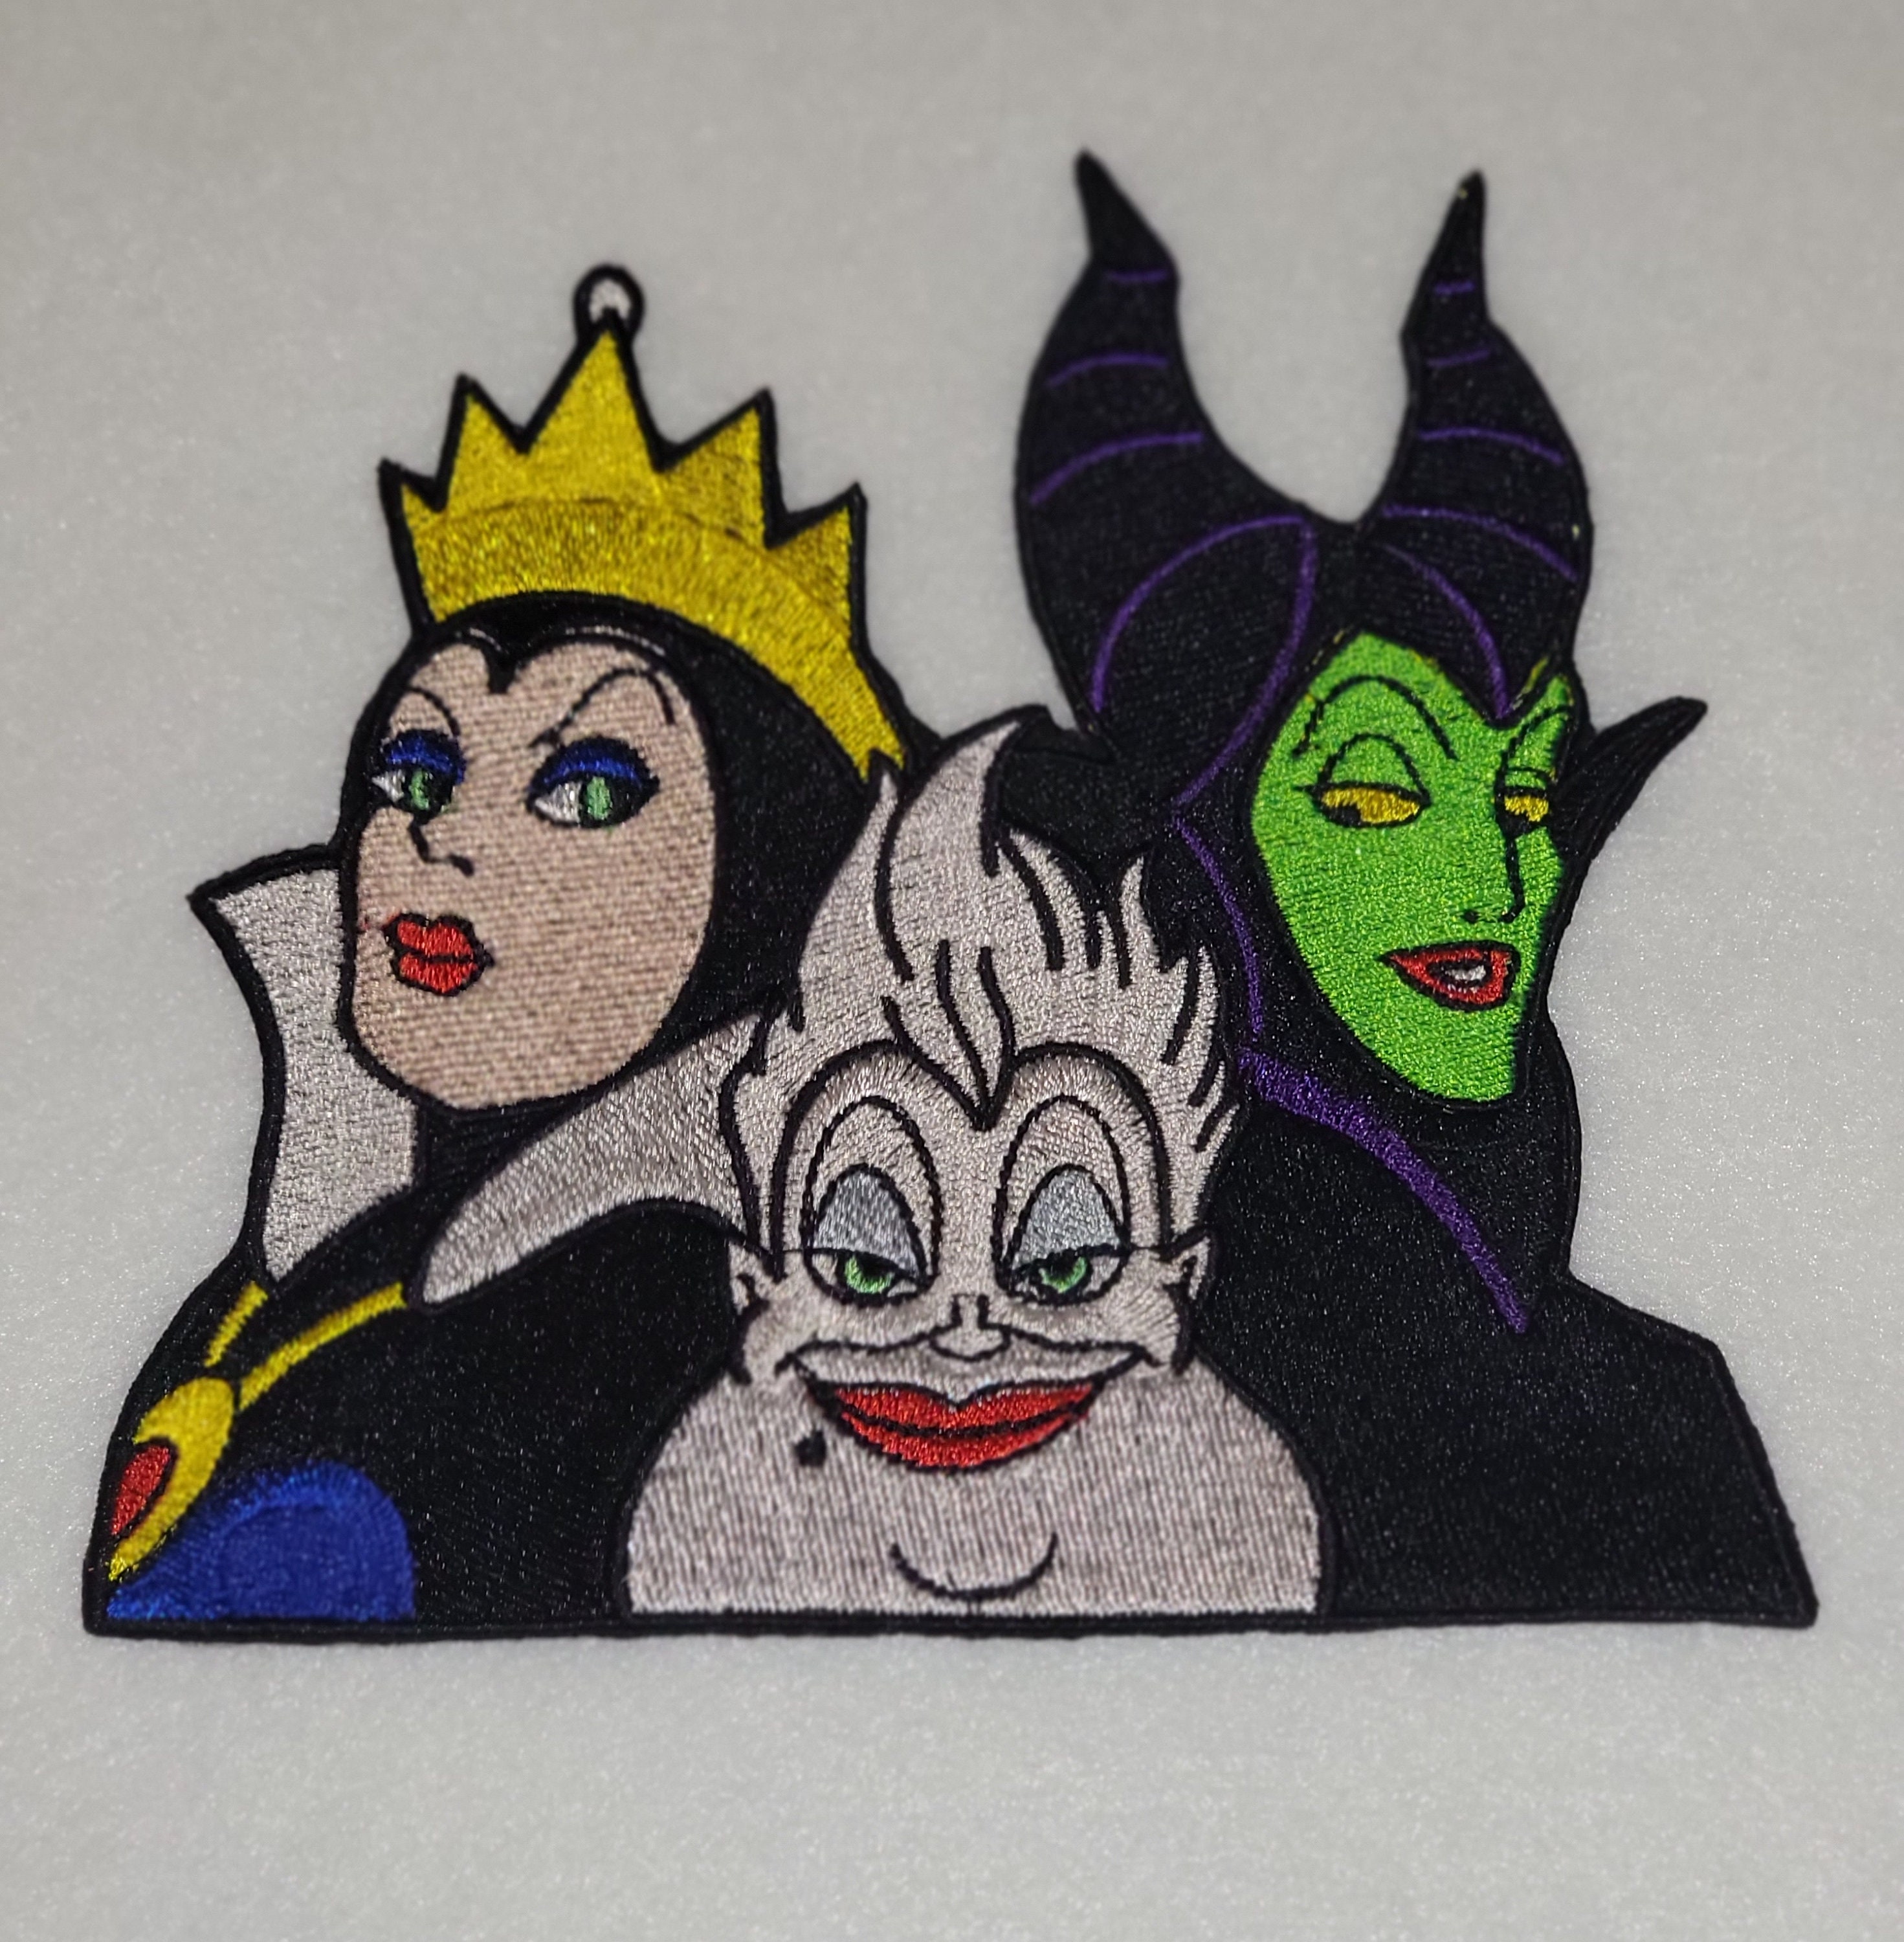 Snow White's Evil Queen Disney Villain Patch DIY Fan Apparel Iron on Applique